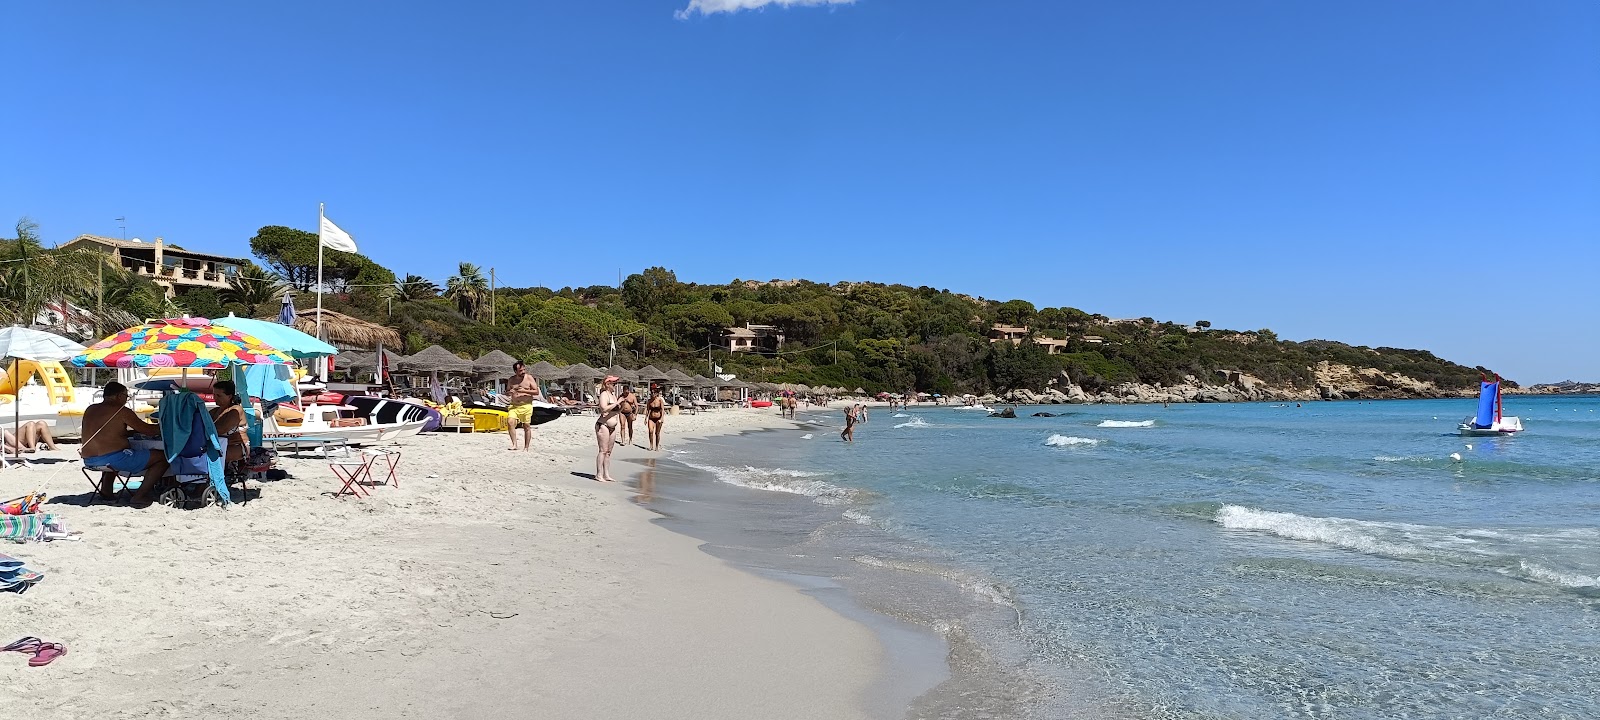 Foto av Spiaggia di Simius och bosättningen